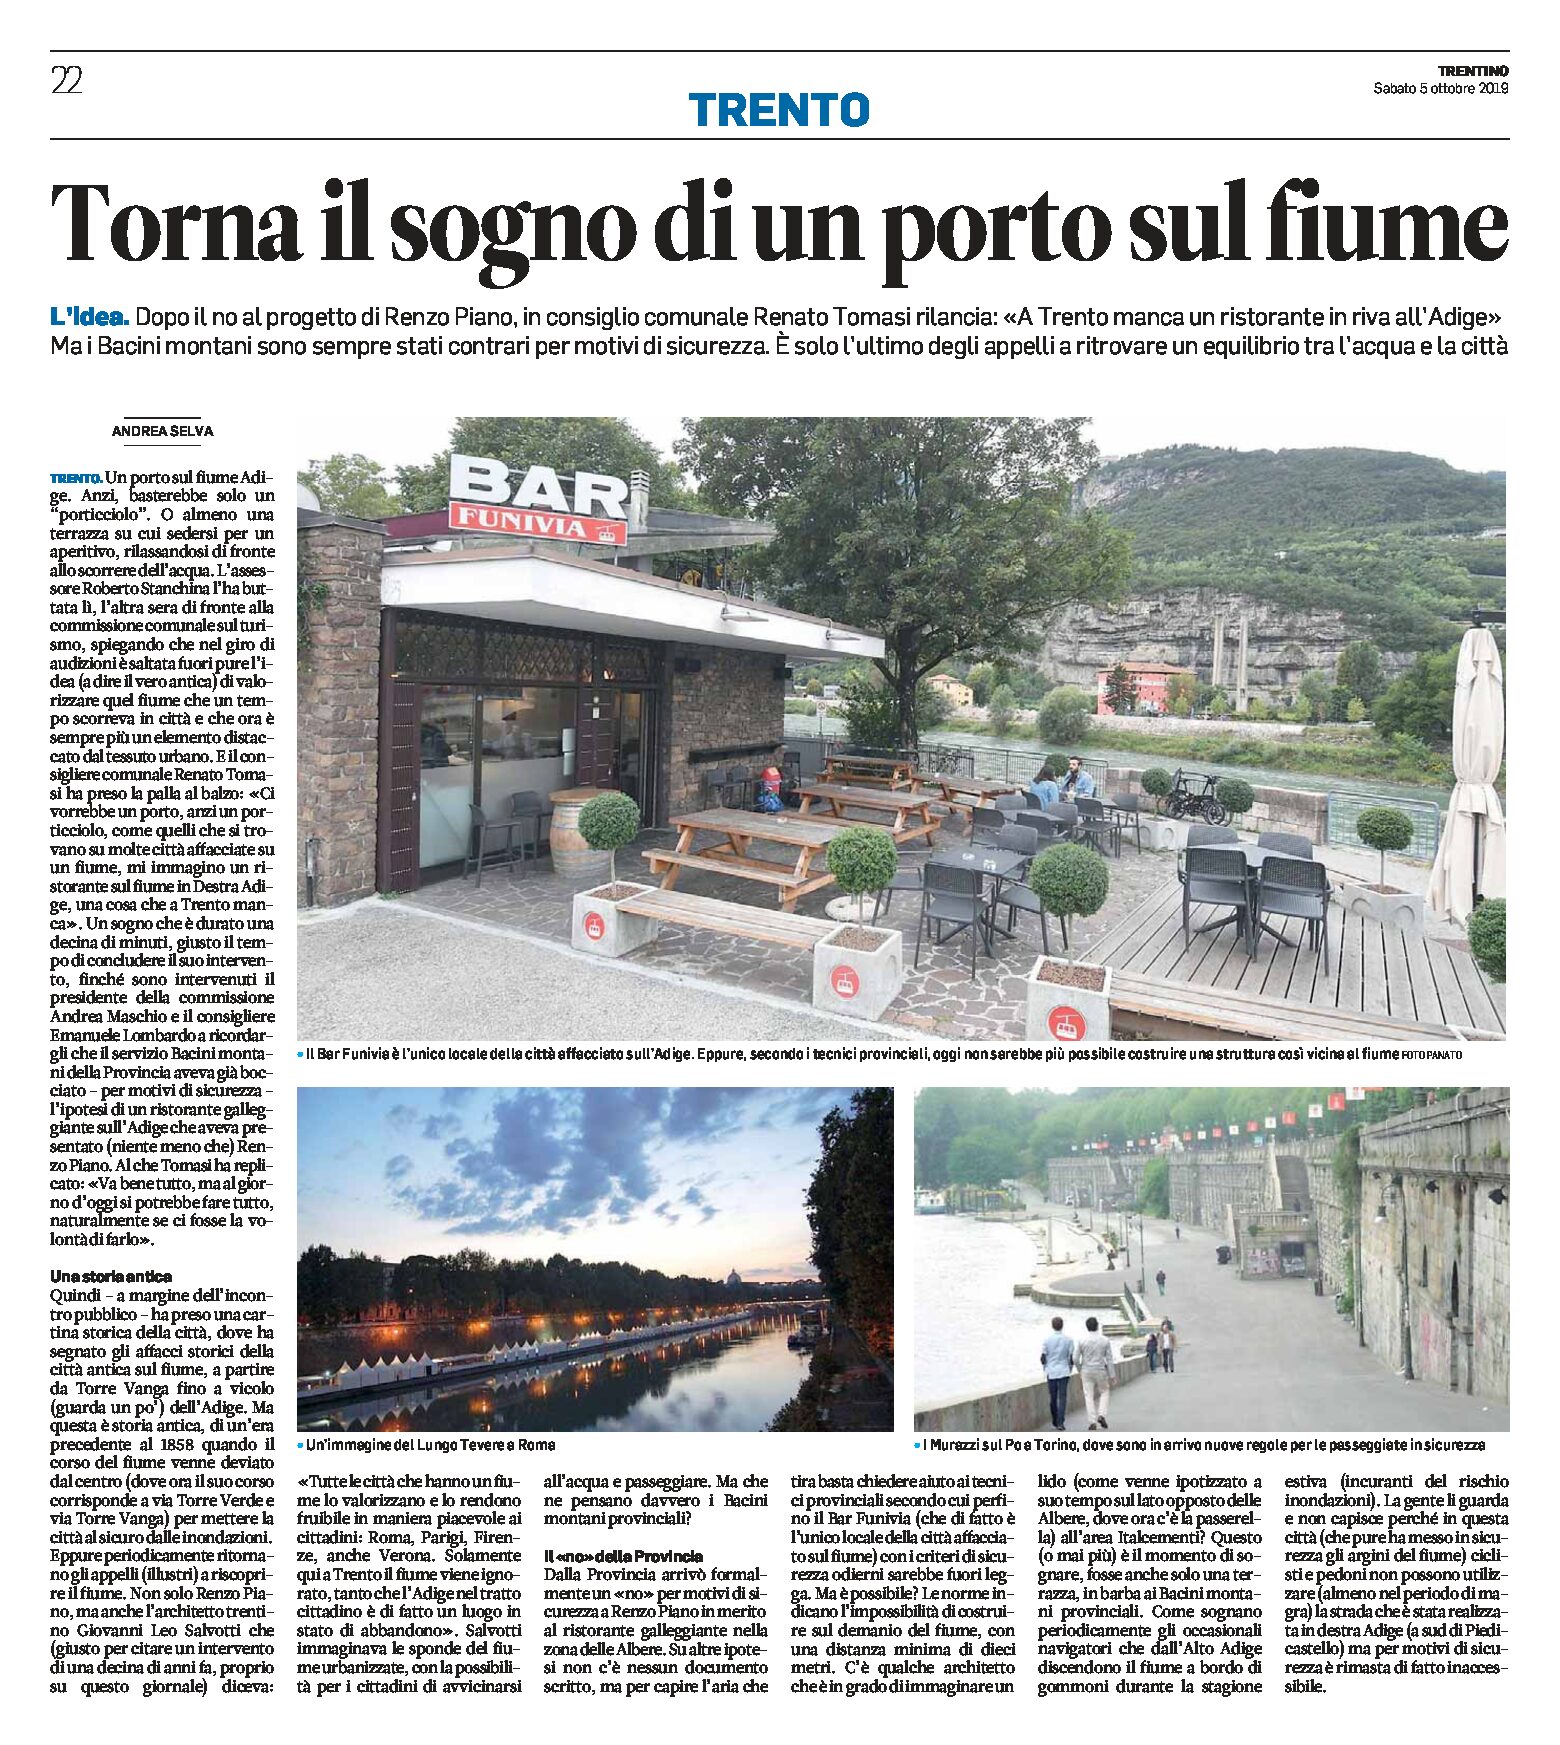 Trento: torna il sogno di un porto sul fiume